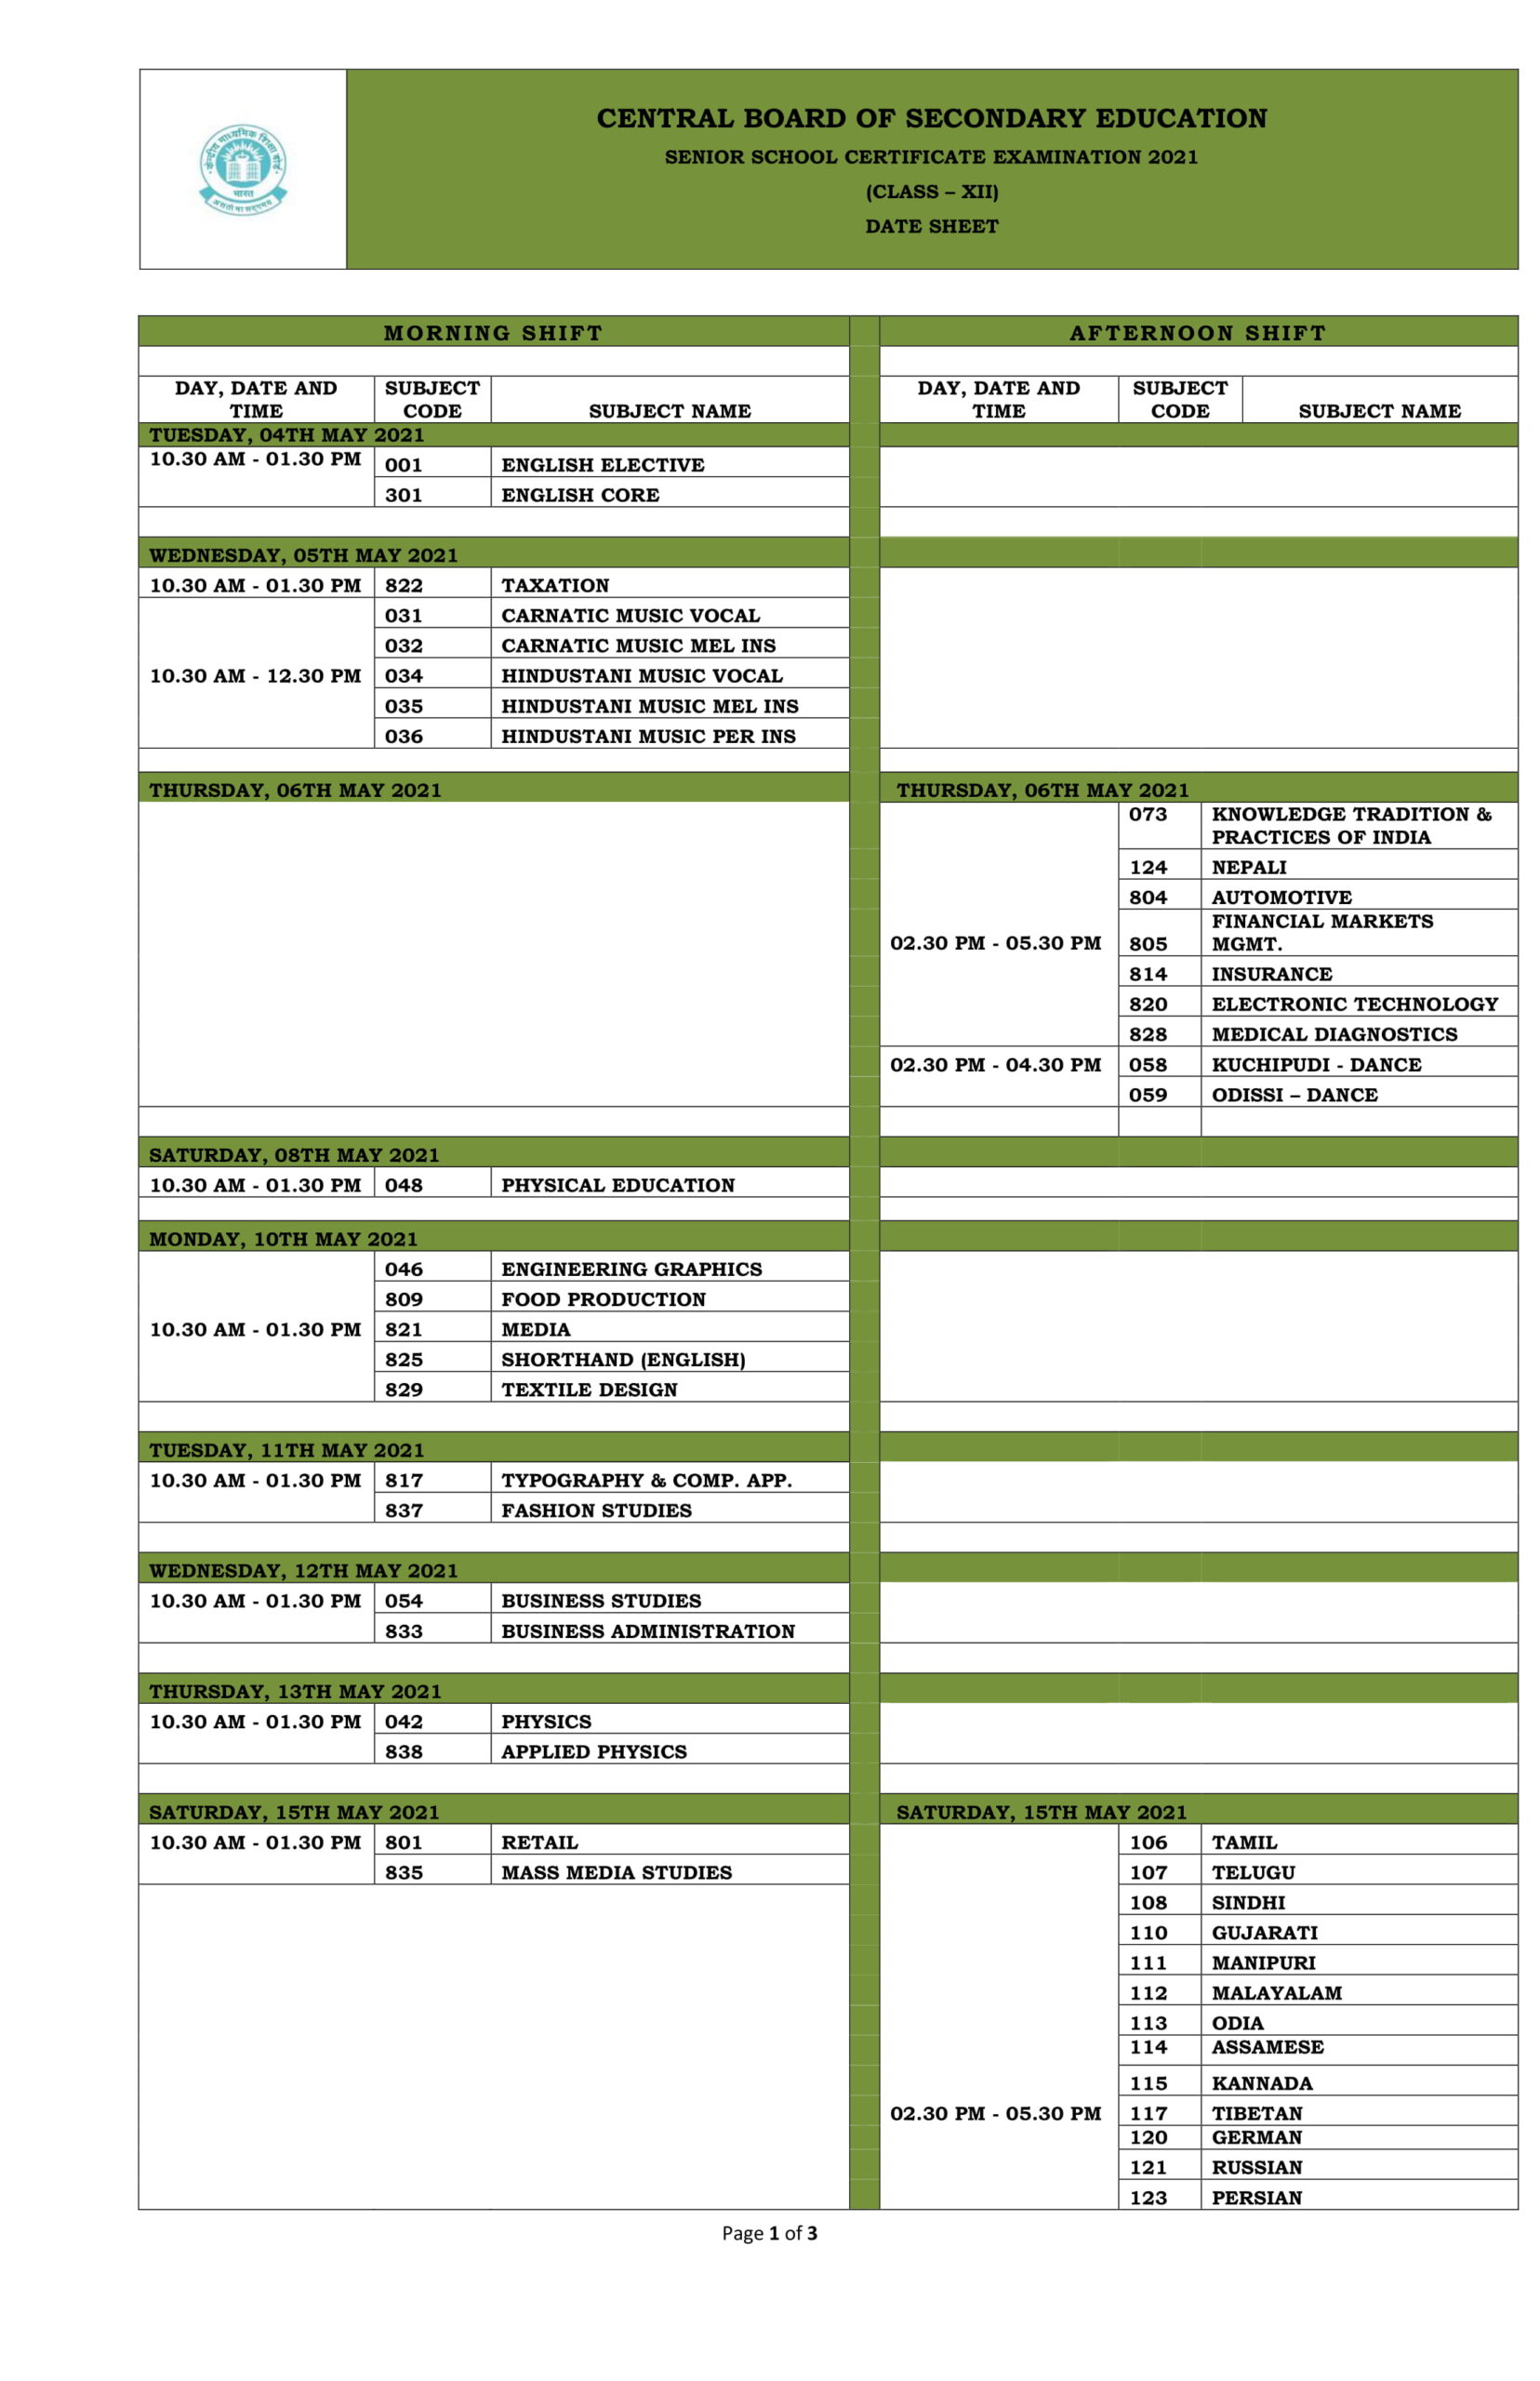 CBSE DateSheet 2021 Class 12 - CBSE Date Sheet